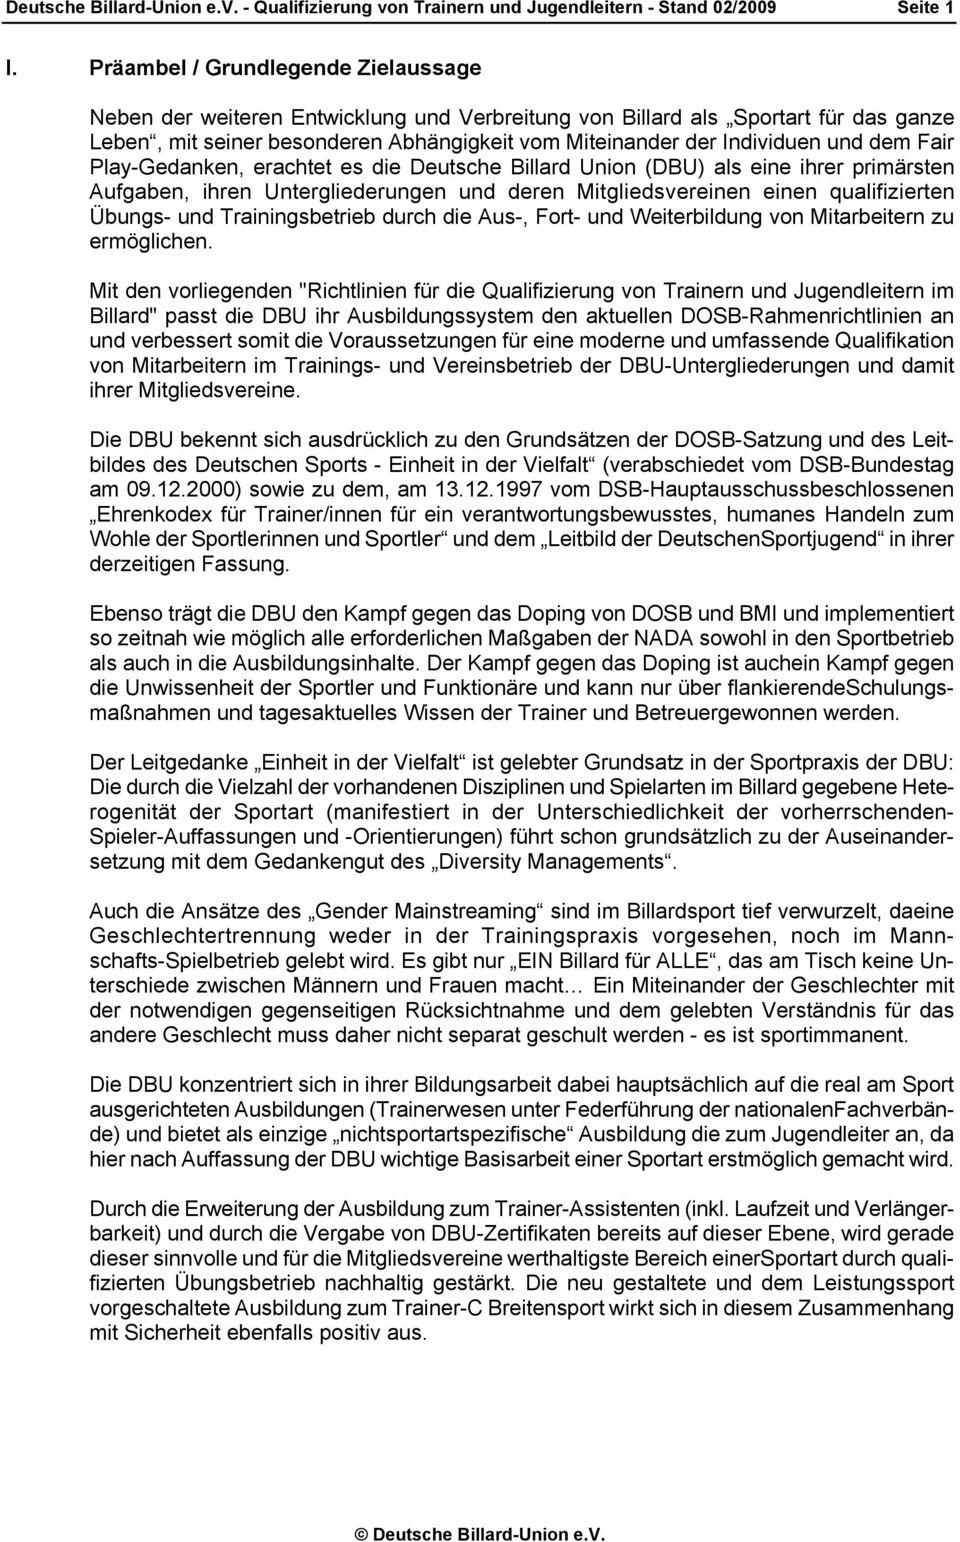 dem Fair Play-Gedanken, erachtet es die Deutsche Billard Union (DBU) als eine ihrer primärsten Aufgaben, ihren Untergliederungen und deren Mitgliedsvereinen einen qualifizierten Übungs- und